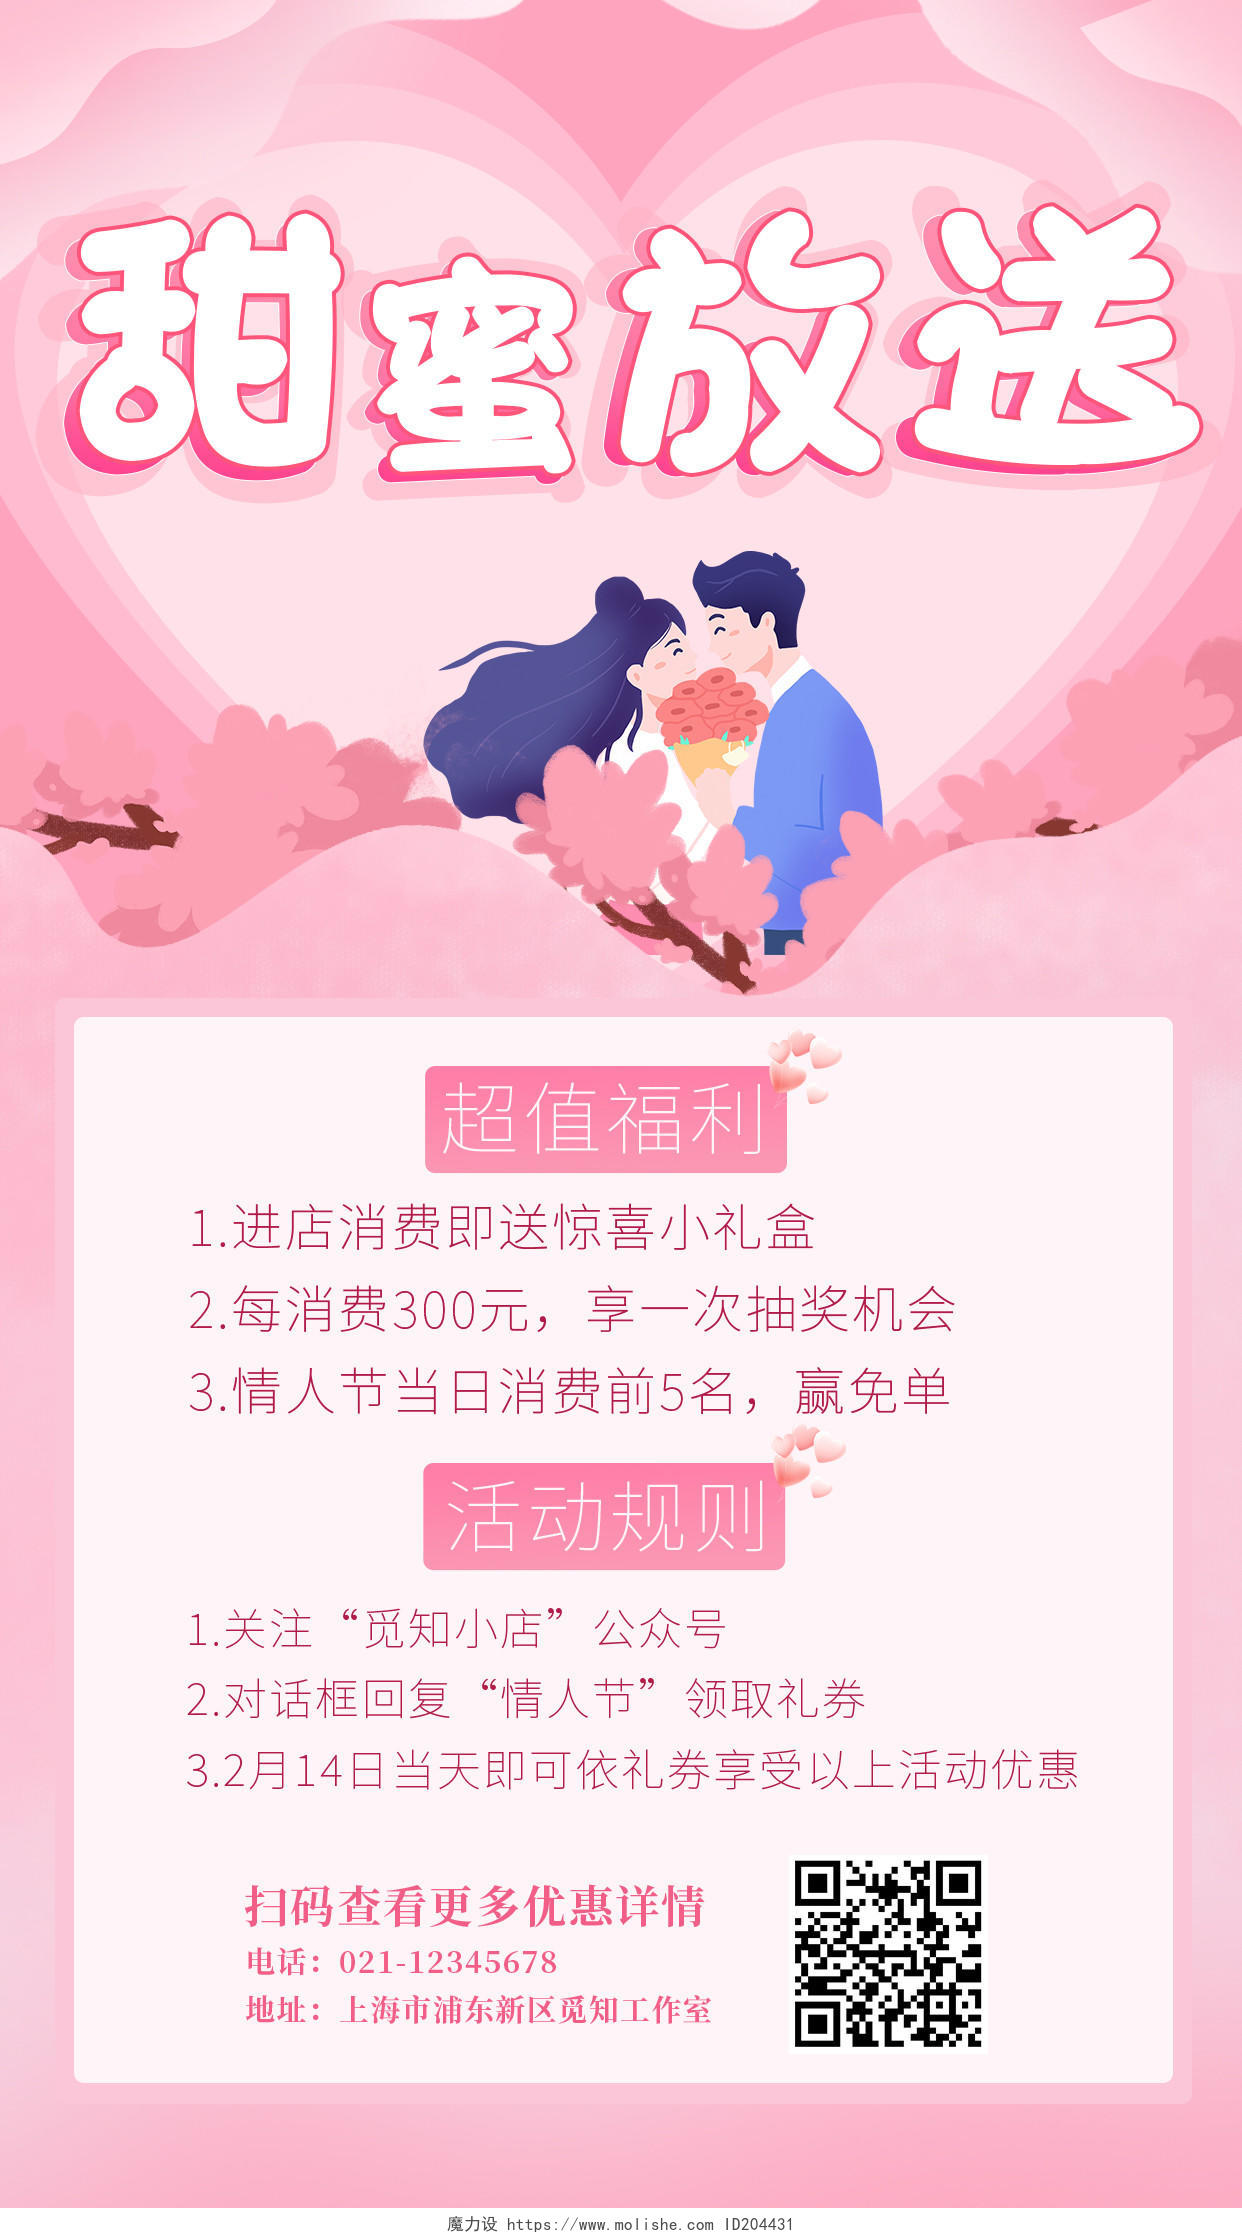 粉色卡通插画甜蜜放送情人节活动手机文案海报